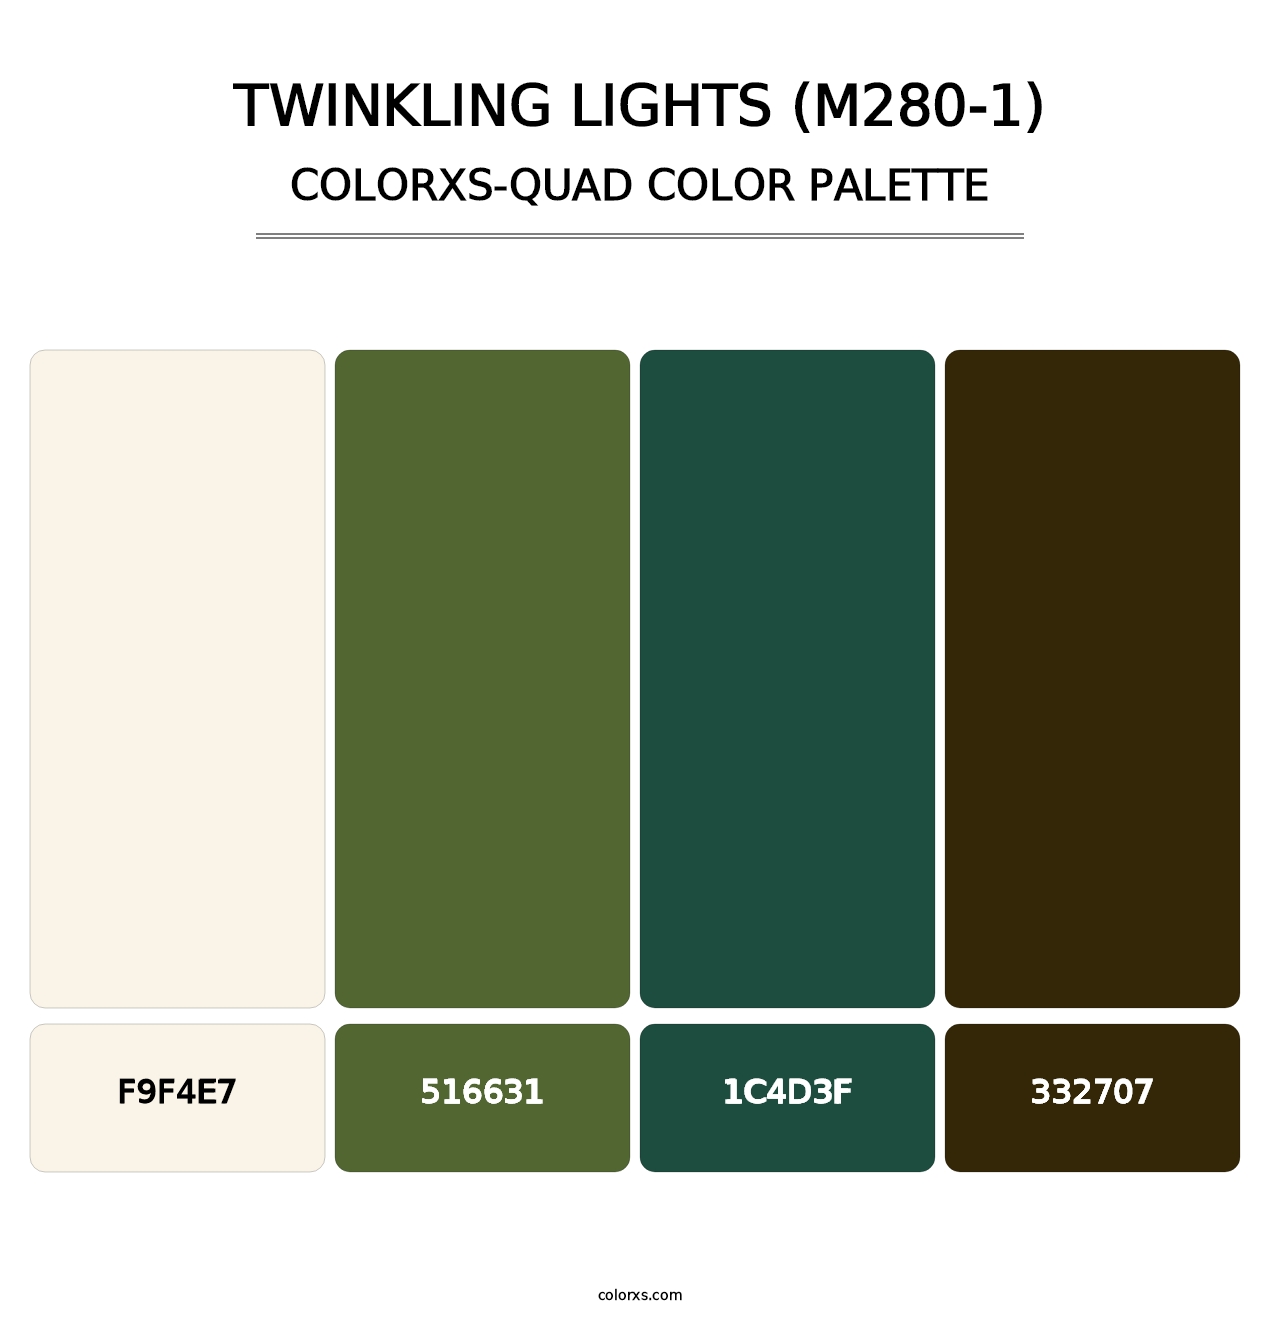 Twinkling Lights (M280-1) - Colorxs Quad Palette